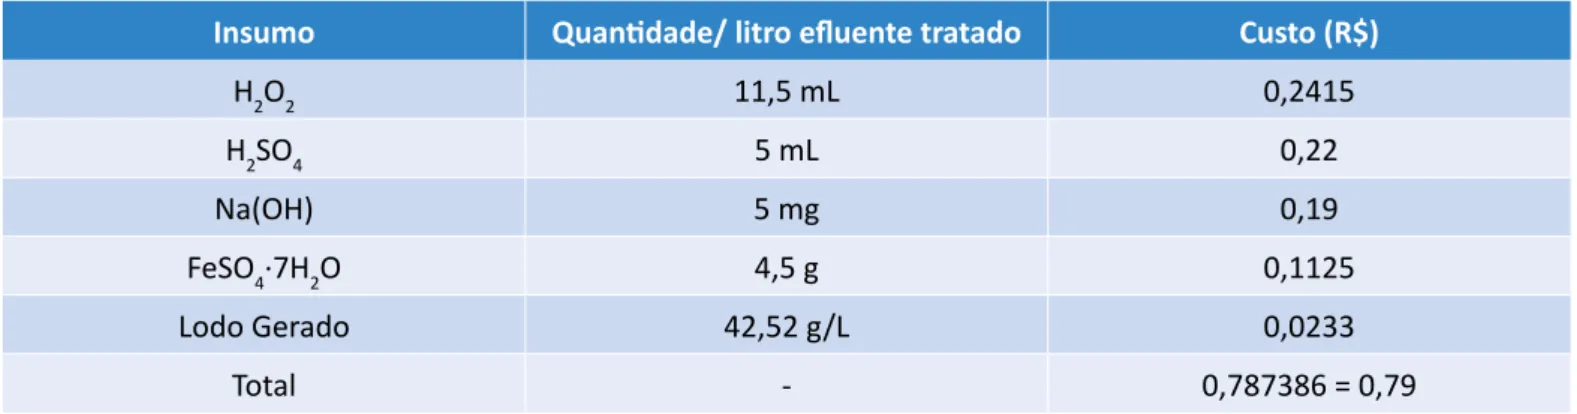 Tabela 4 – Cálculo do custo para tratamento de um litro de efluente.